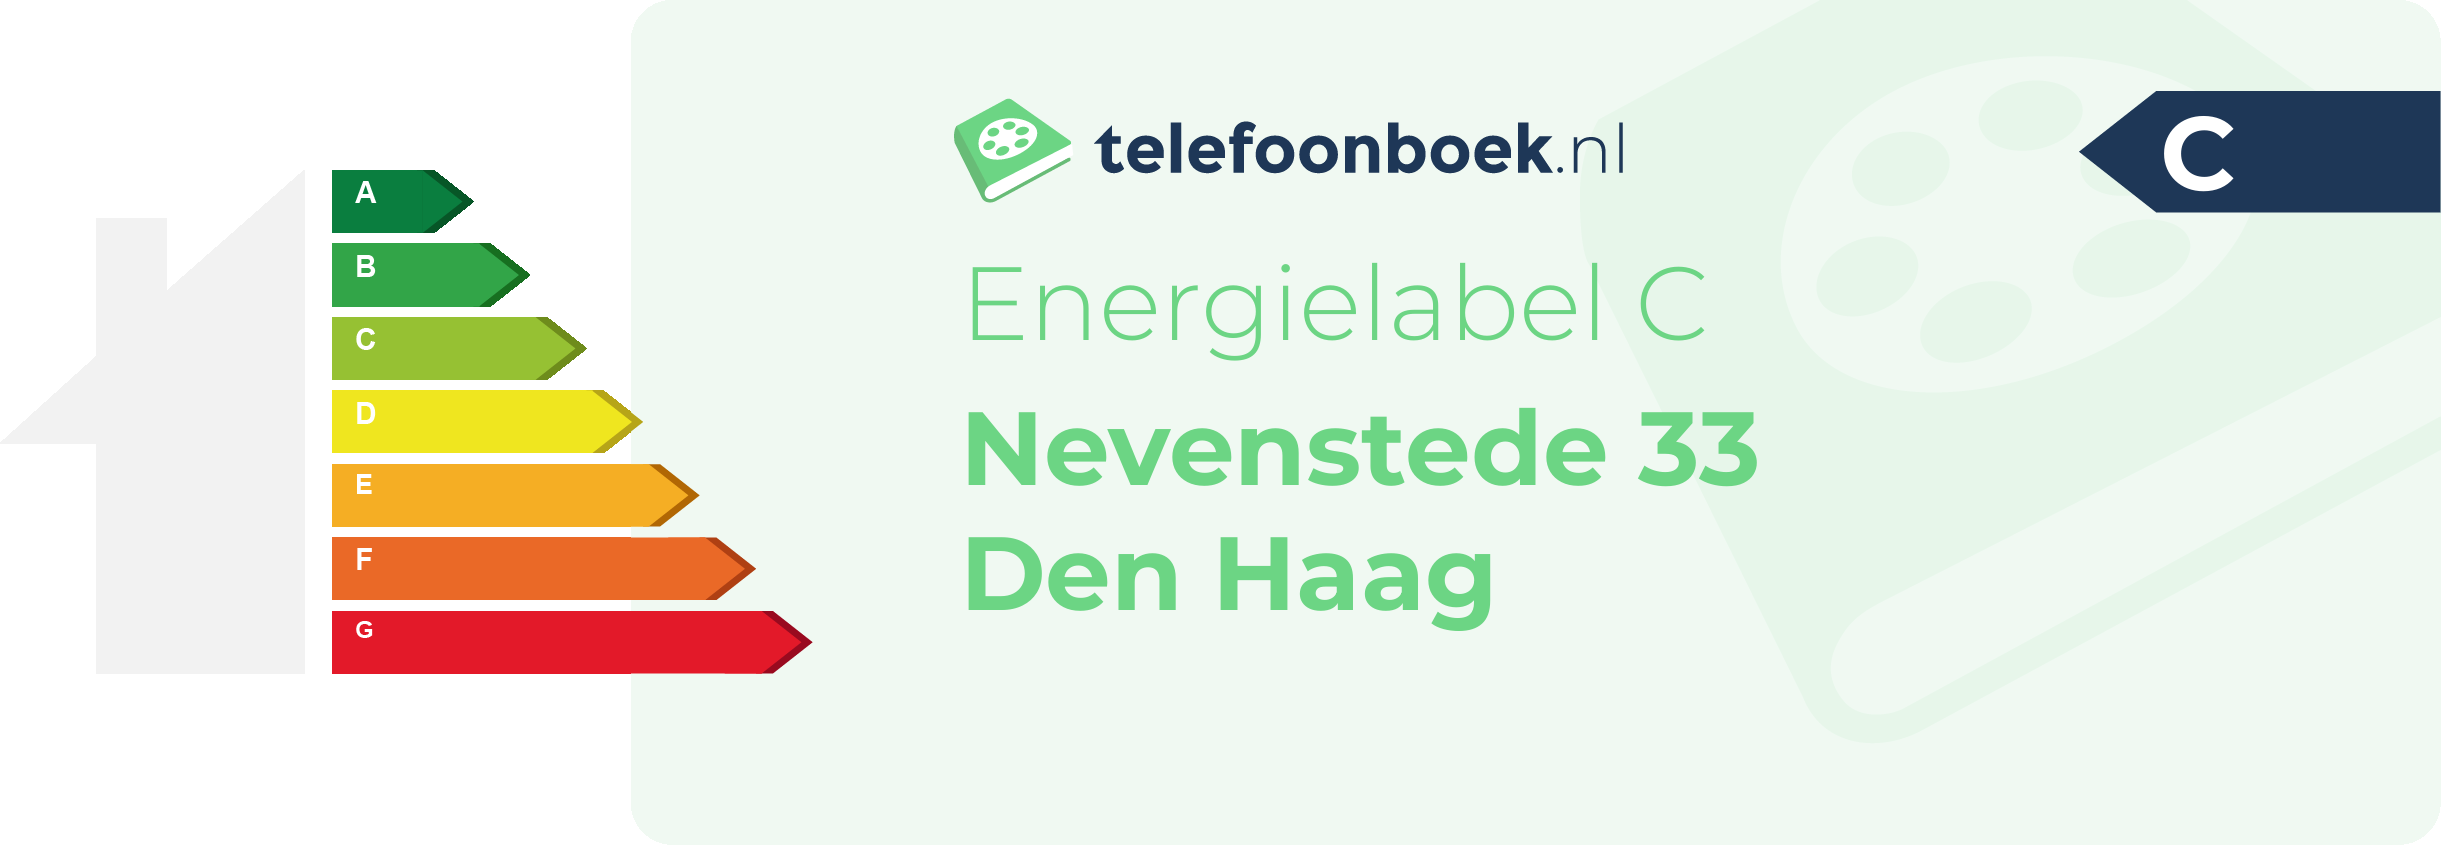 Energielabel Nevenstede 33 Den Haag